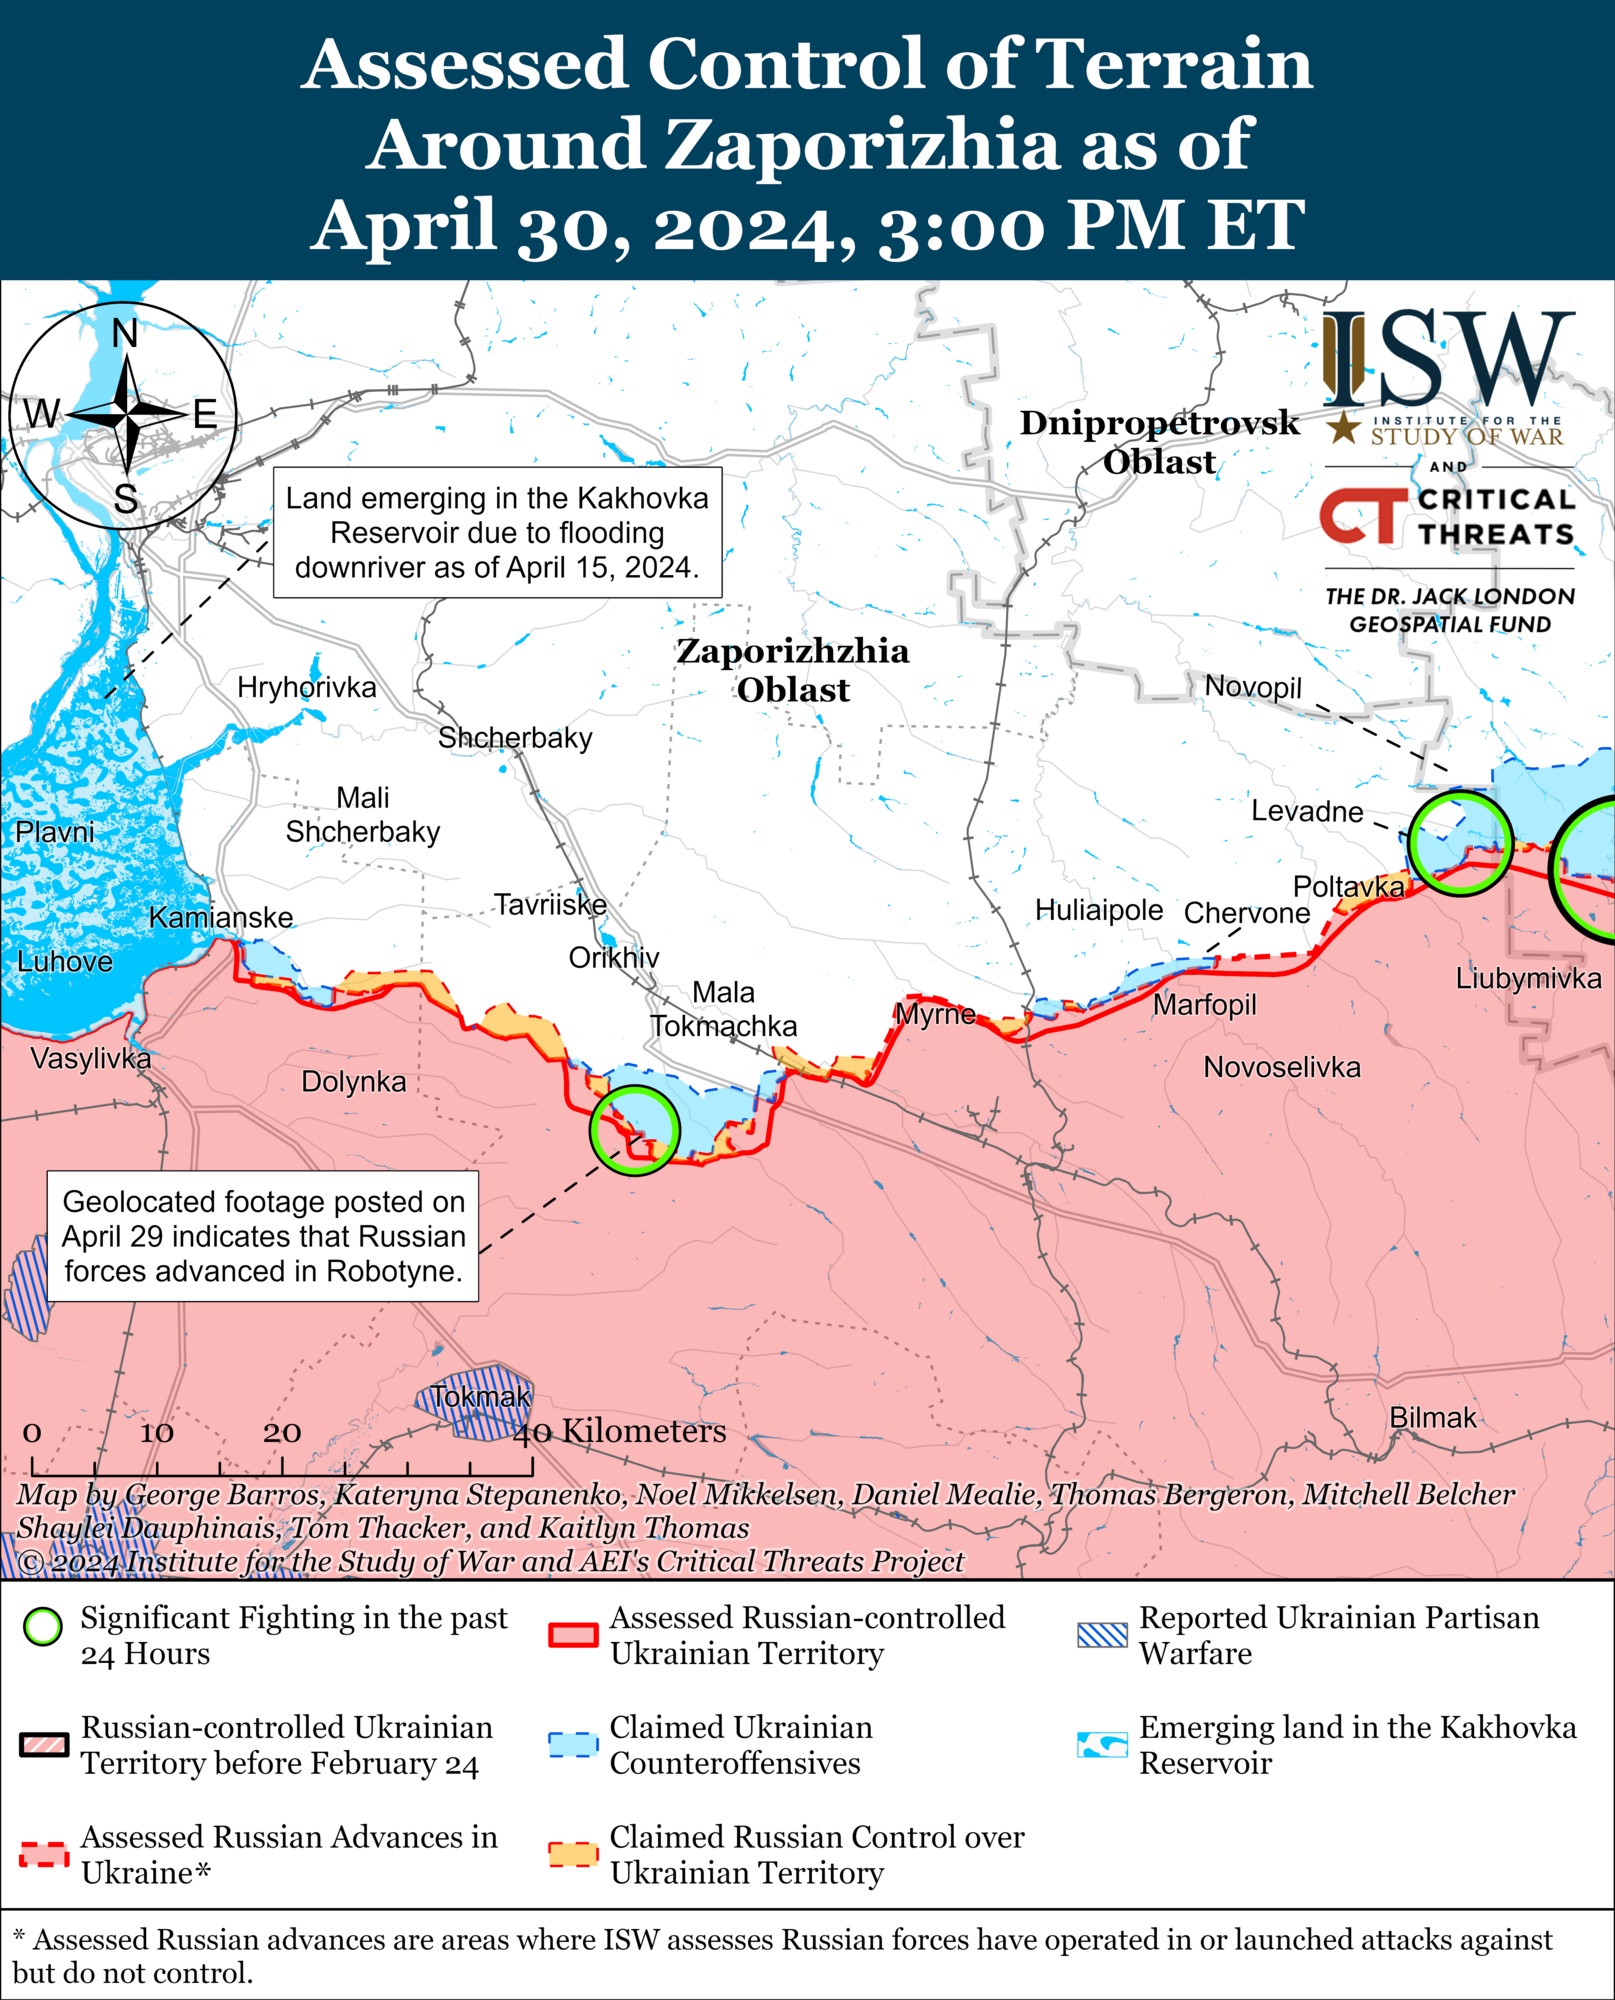 ВСУ вернули себе утраченные позиции в районе Кременной: анализ боевых действий от ISW